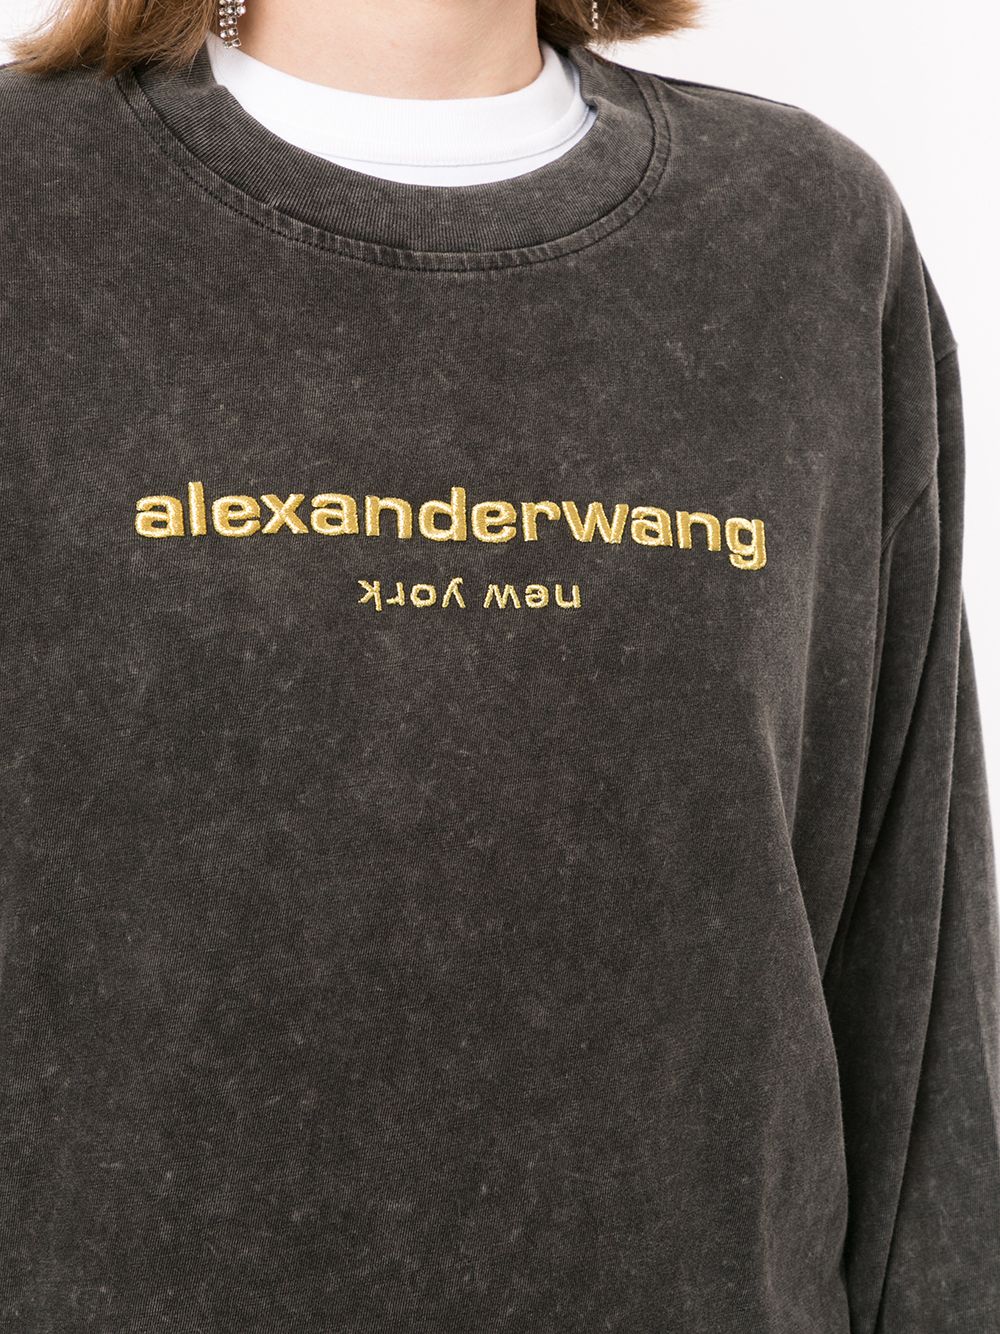 фото Alexander wang толстовка с вышитым логотипом